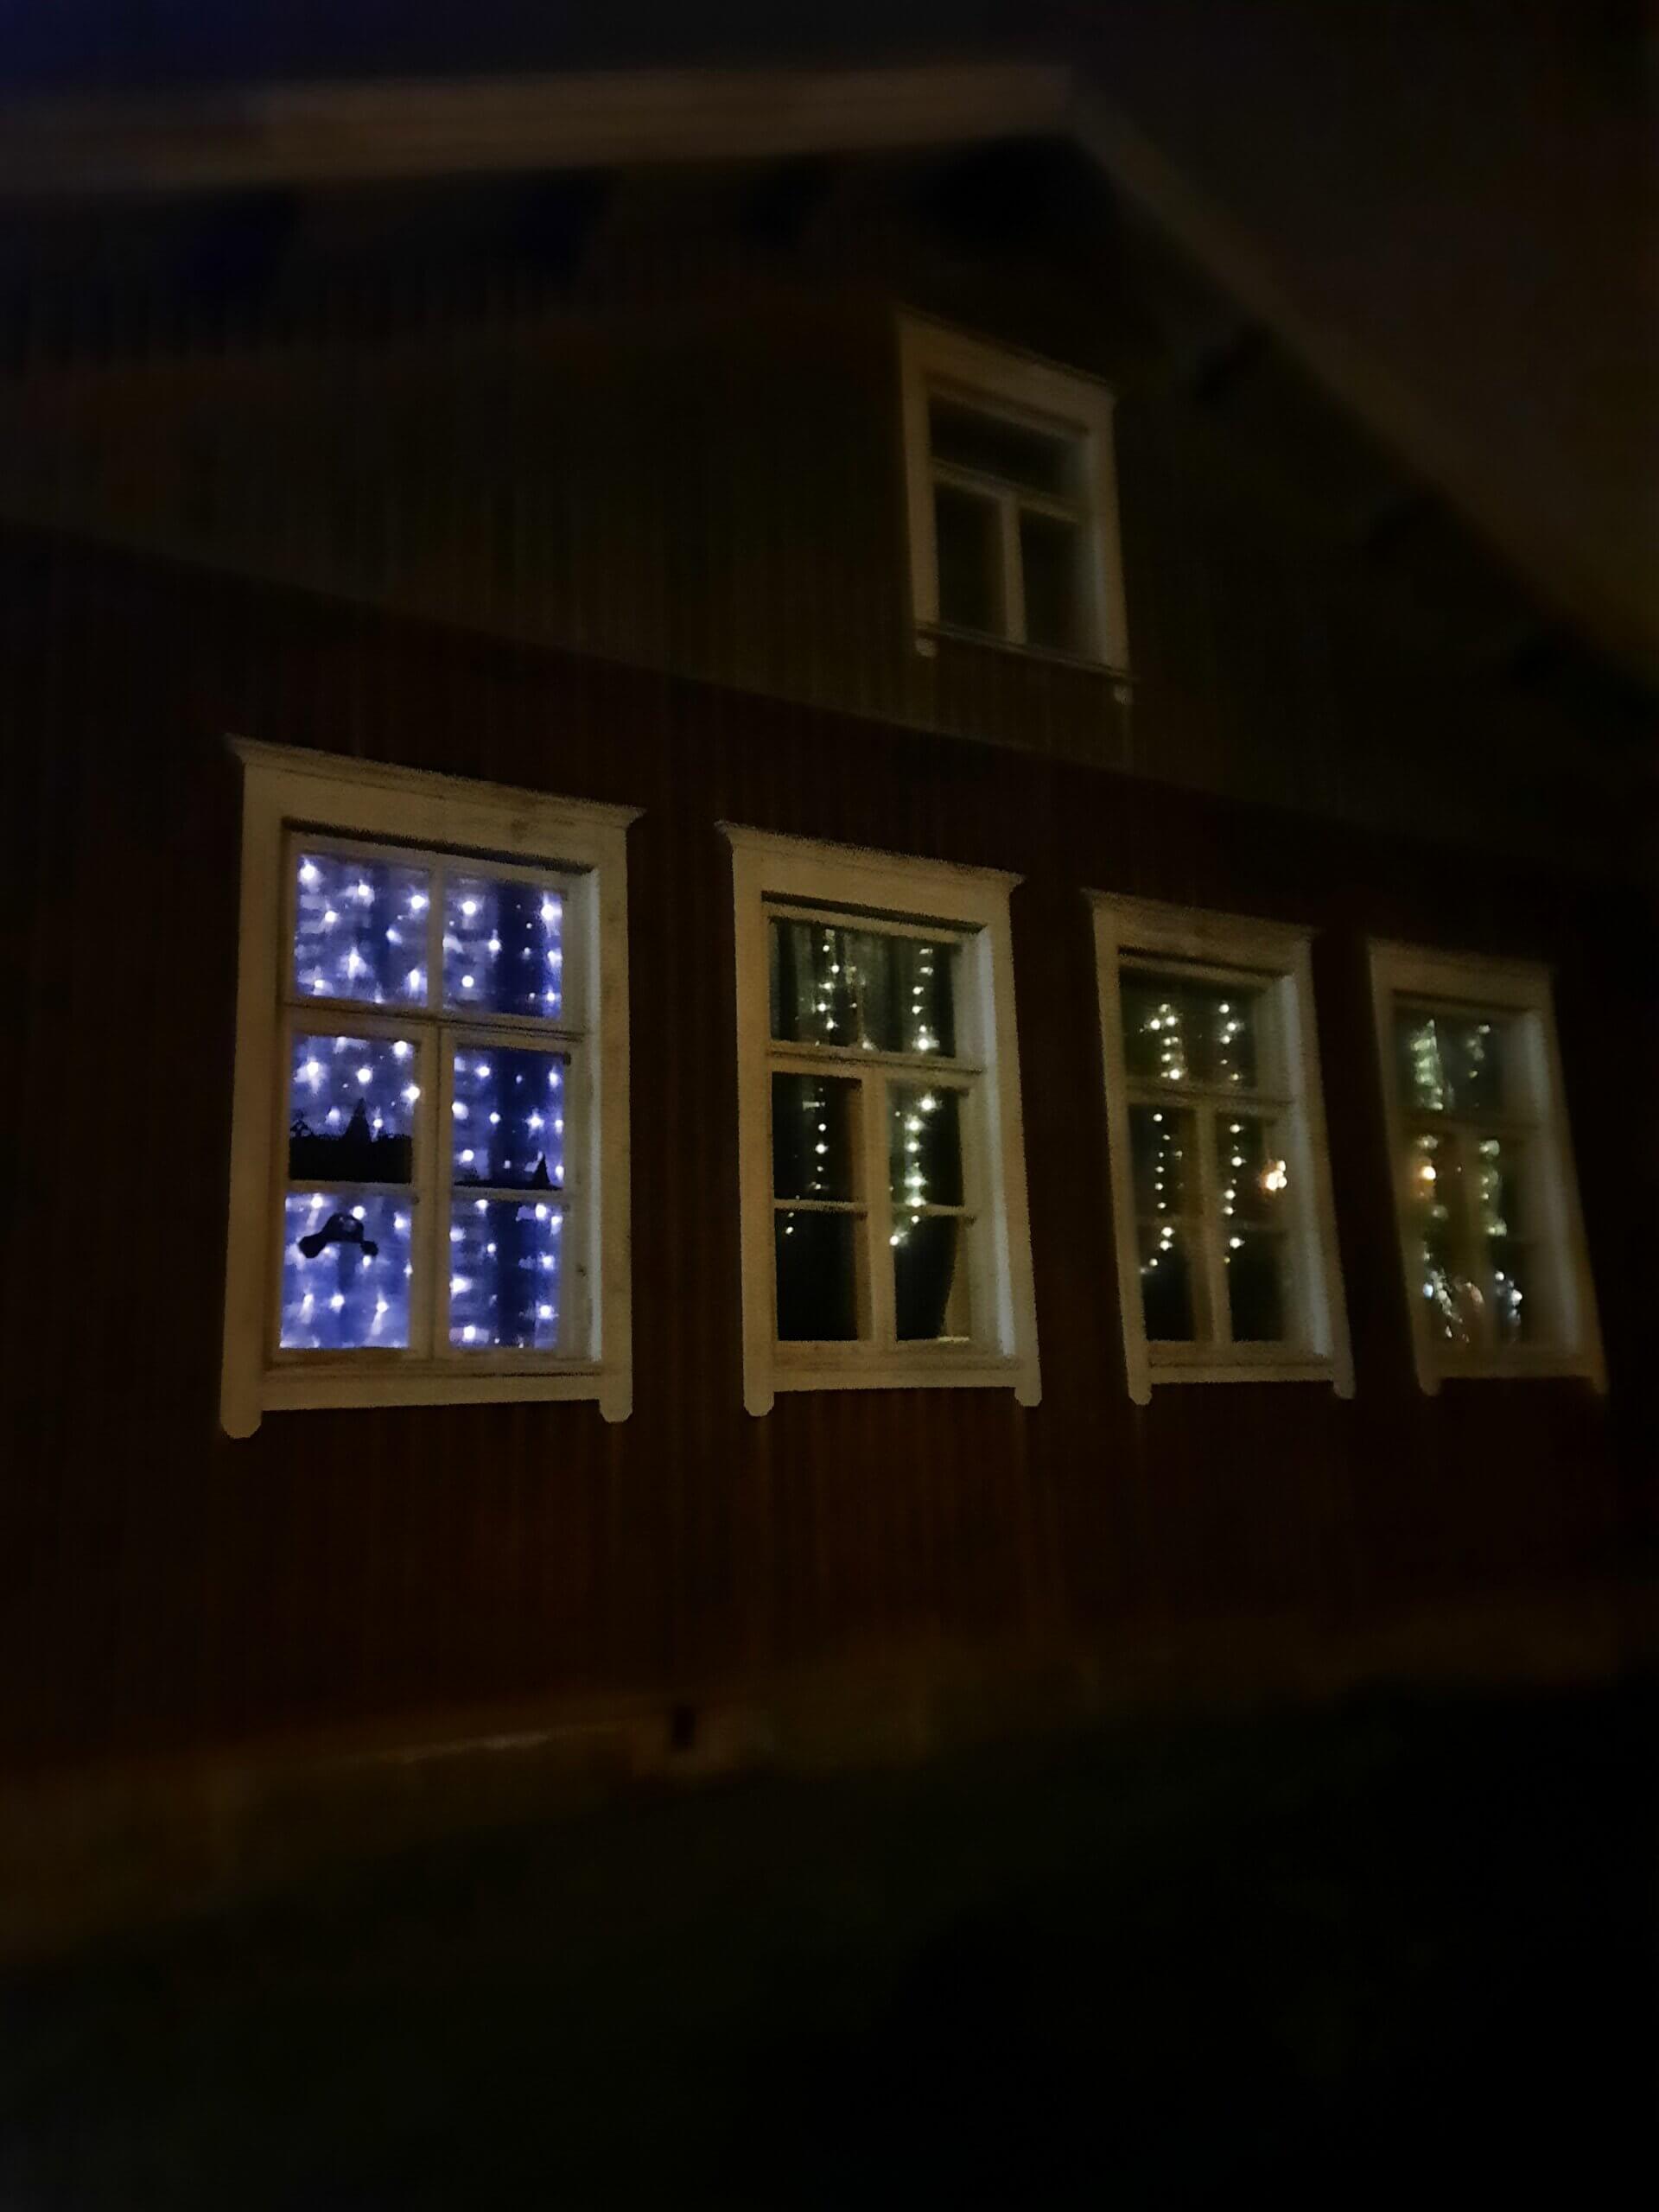 Arkkitehtuuri- ja ympäristökulttuurikoulu Lastun luokkahuoneen ikkunat saivat sinisen valaistuksen vastauksena Unicefin haasteeseen valaista tärkeitä rakennuksia sinisellä valolla.